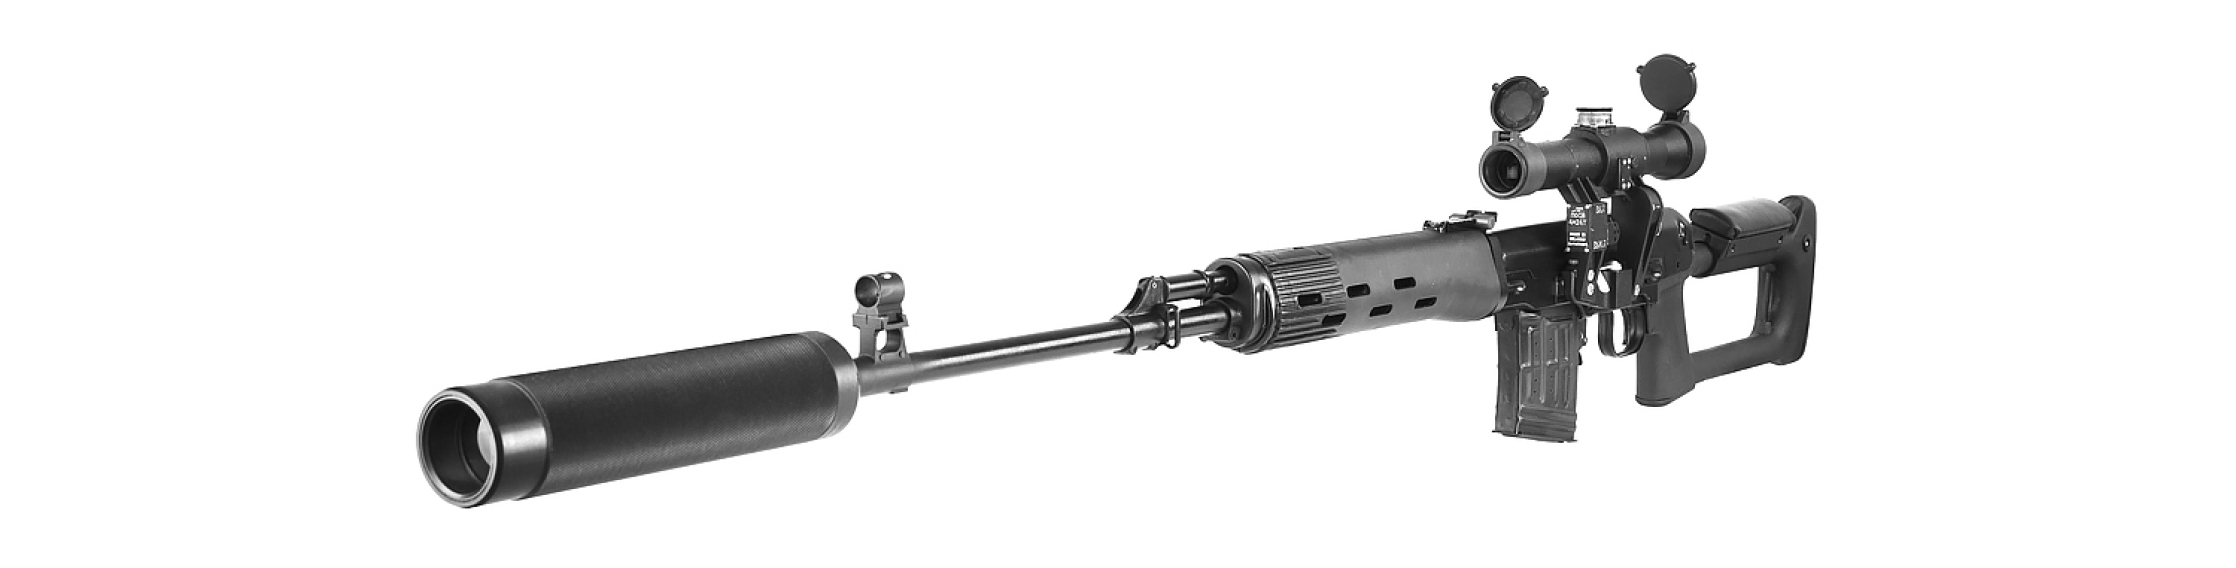 Снайперская винтовка СВД «ТИТАН» серии «STEEL» - фото 2